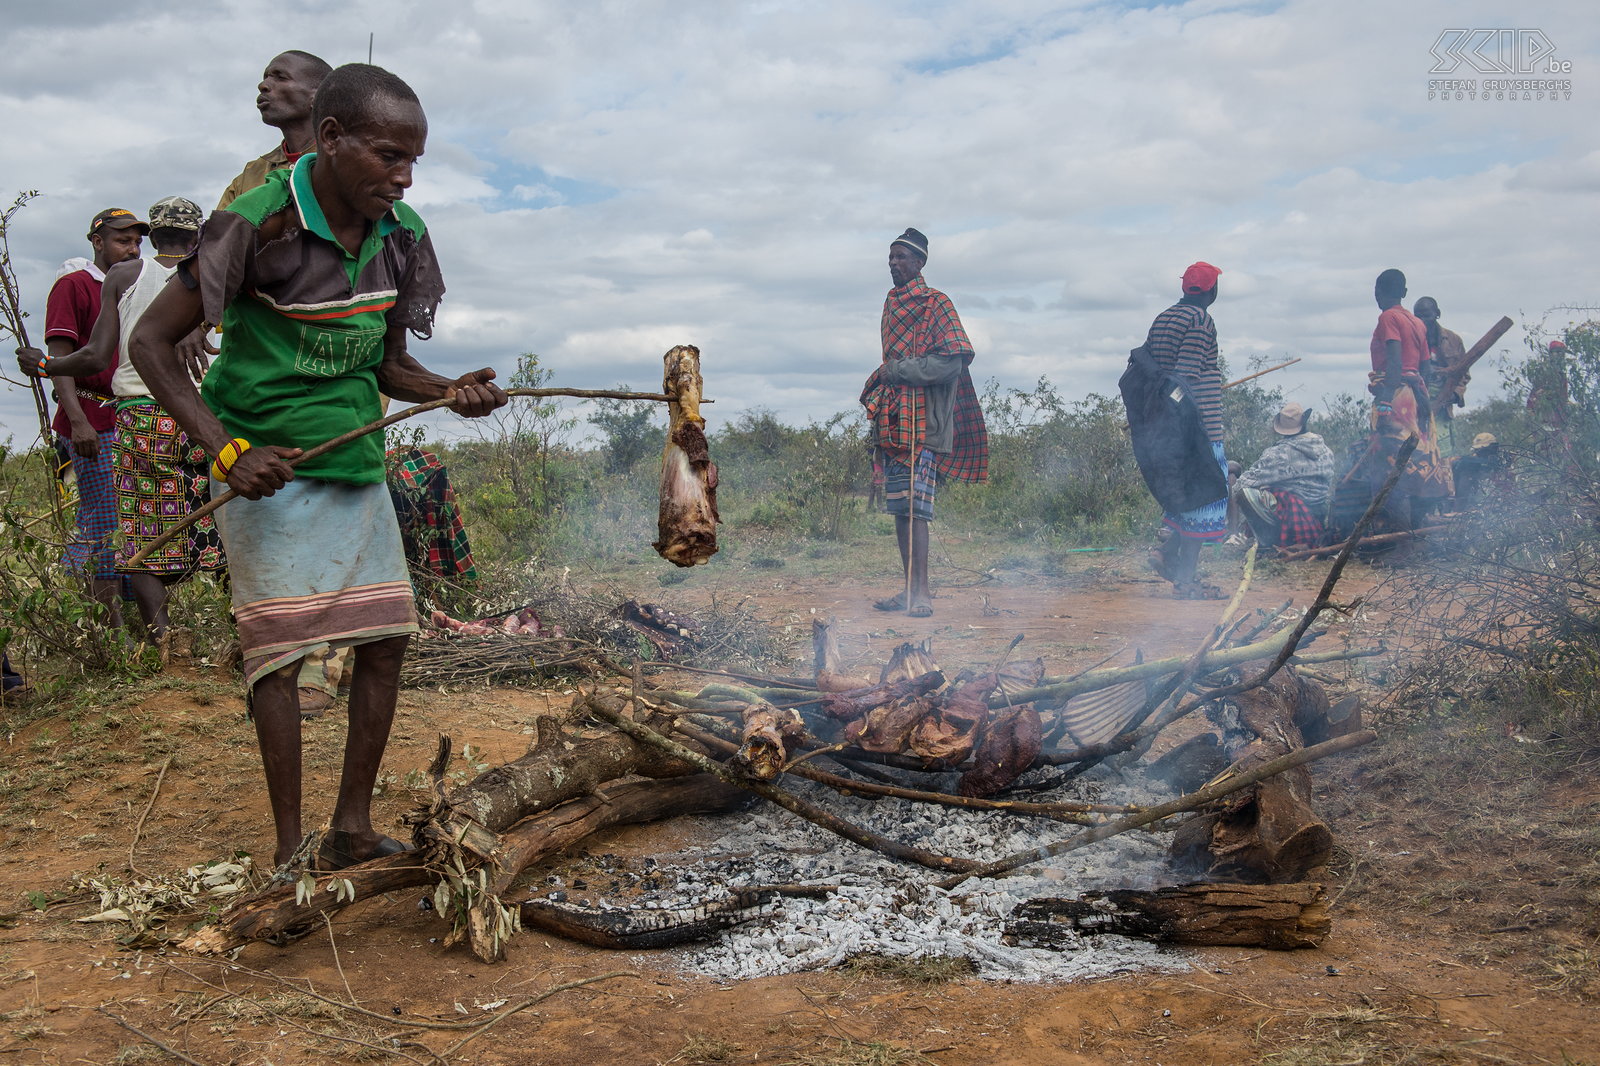 Kisima - Samburu lmuget - Roosteren van het vlees We hadden een fantastische dag bij de vriendelijke Samburu mensen. 's Avonds hadden ze ongetwijfeld nog een groot feest. De volgende generatie jonge jongens van deze clan moet nu minstens 6 jaar wachten op een volgende lmuget ceremonie. Stefan Cruysberghs